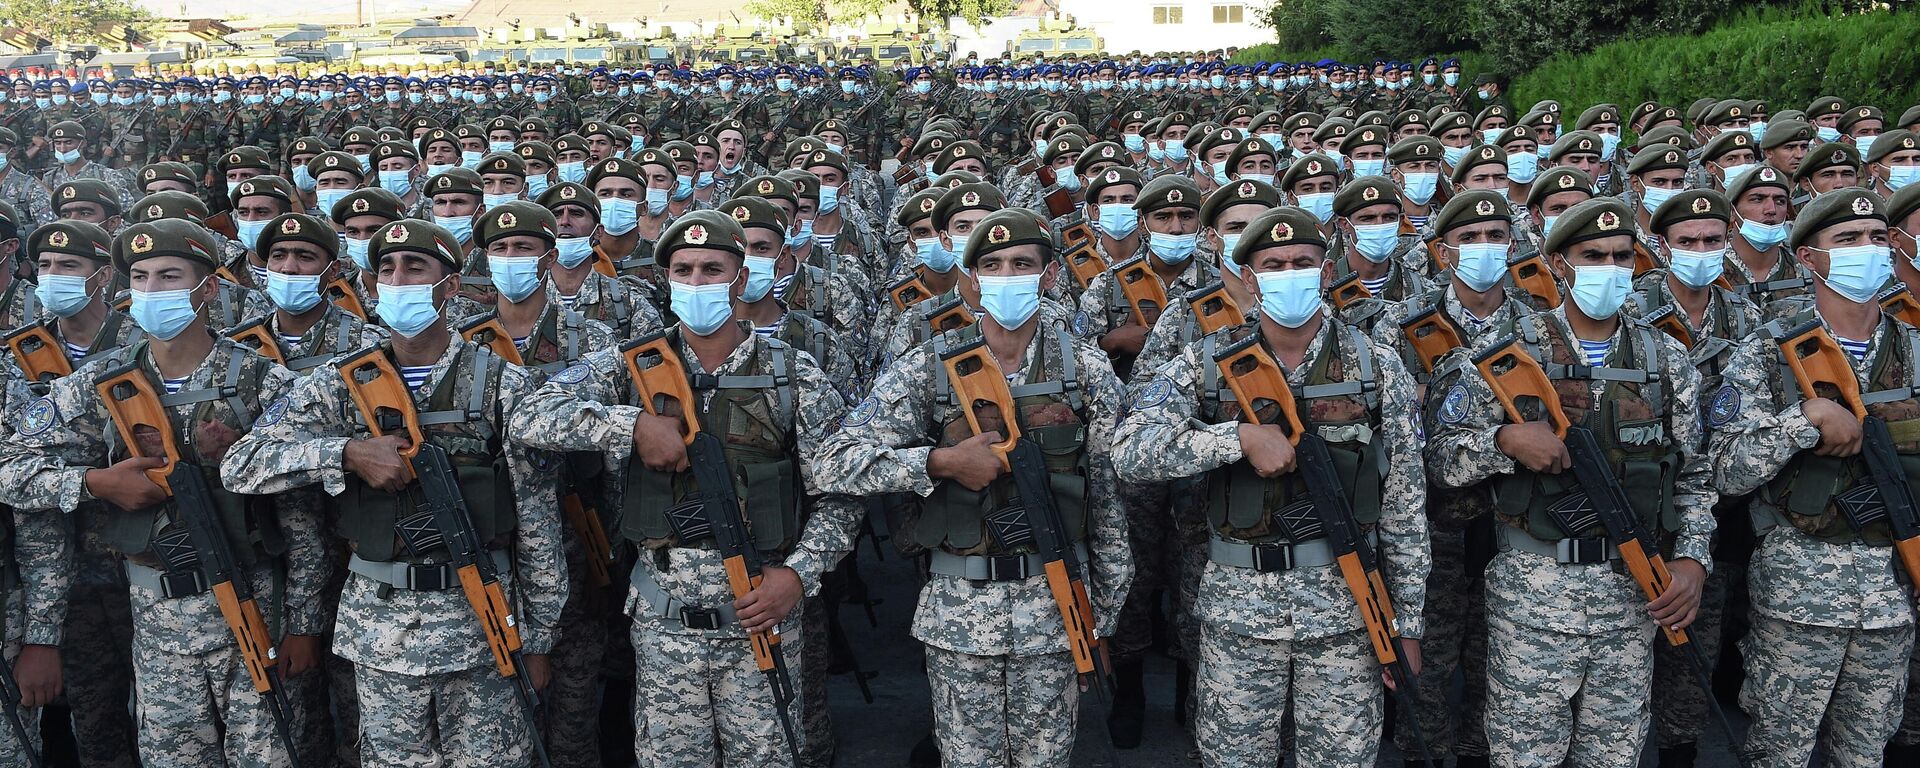 El desfile de las Fuerzas Armadas, reservistas y agentes de los cuerpos de seguridad de Tayikistán - Sputnik Mundo, 1920, 22.07.2021